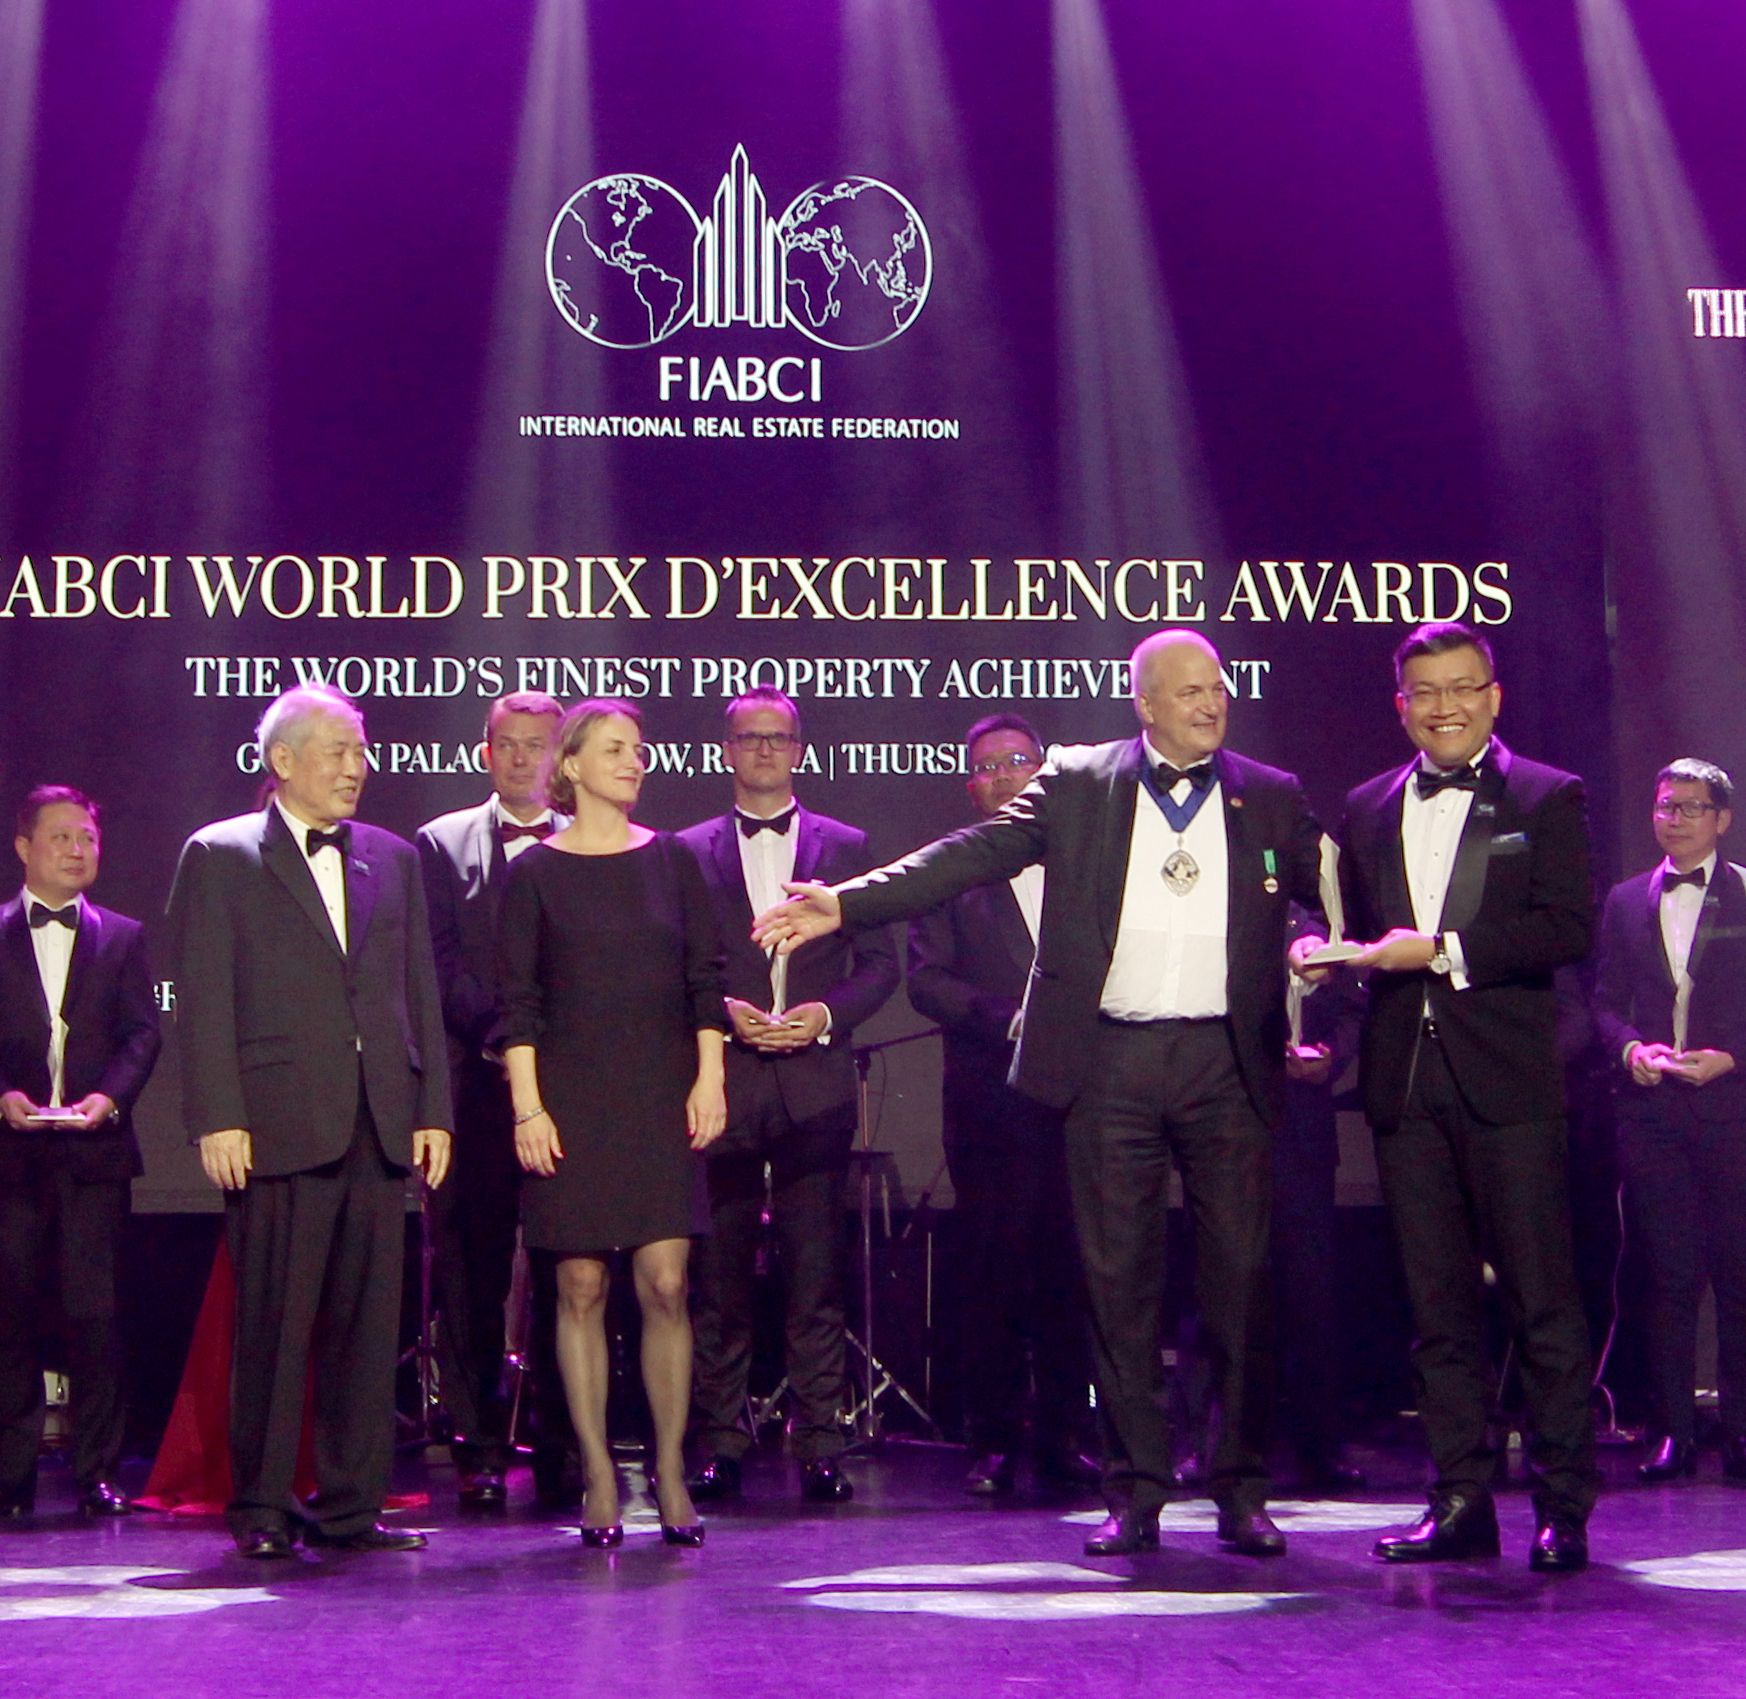  Celadon City đạt giải thưởng bất động sản FIABCI World Prix d’Excellence Awards 2019